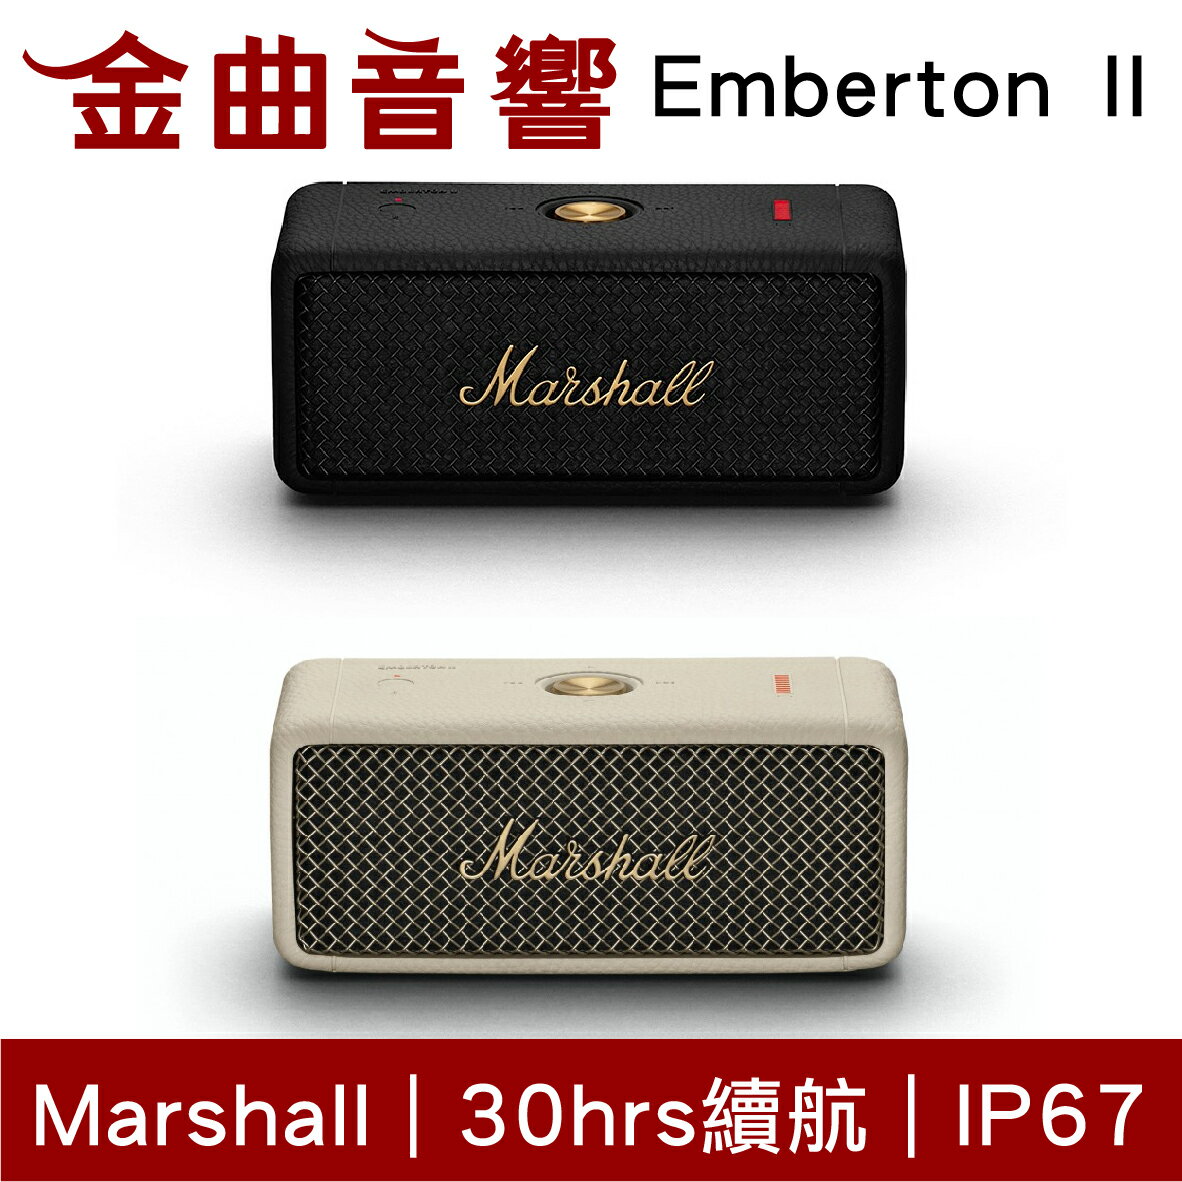 Marshall 馬歇爾 Emberton II 二代 IPX7 多台串聯 可攜式 藍芽 喇叭 | 金曲音響